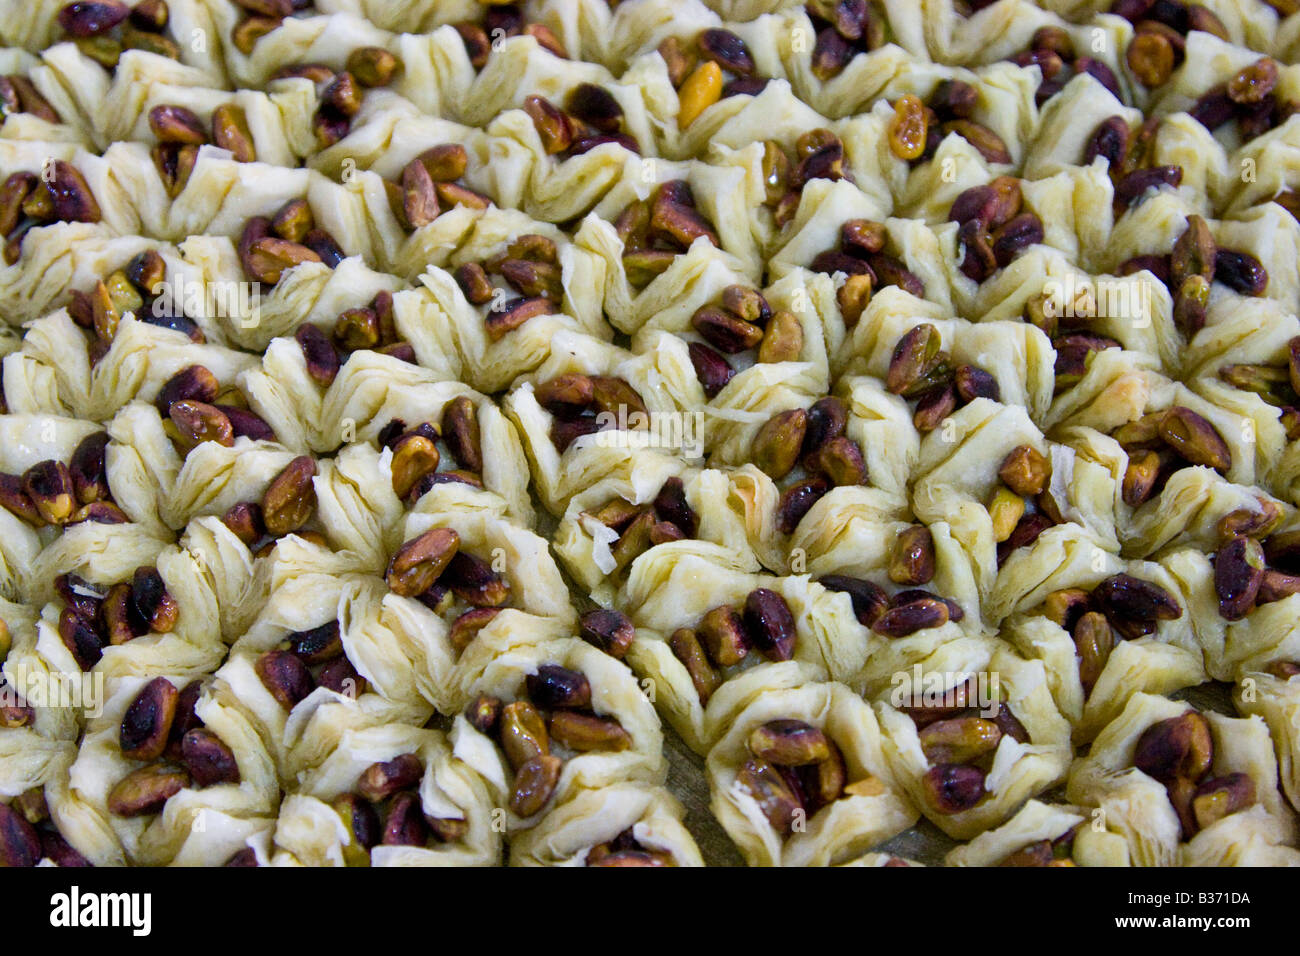 Bonbons dans une boulangerie d'Aleppo Syrie Banque D'Images